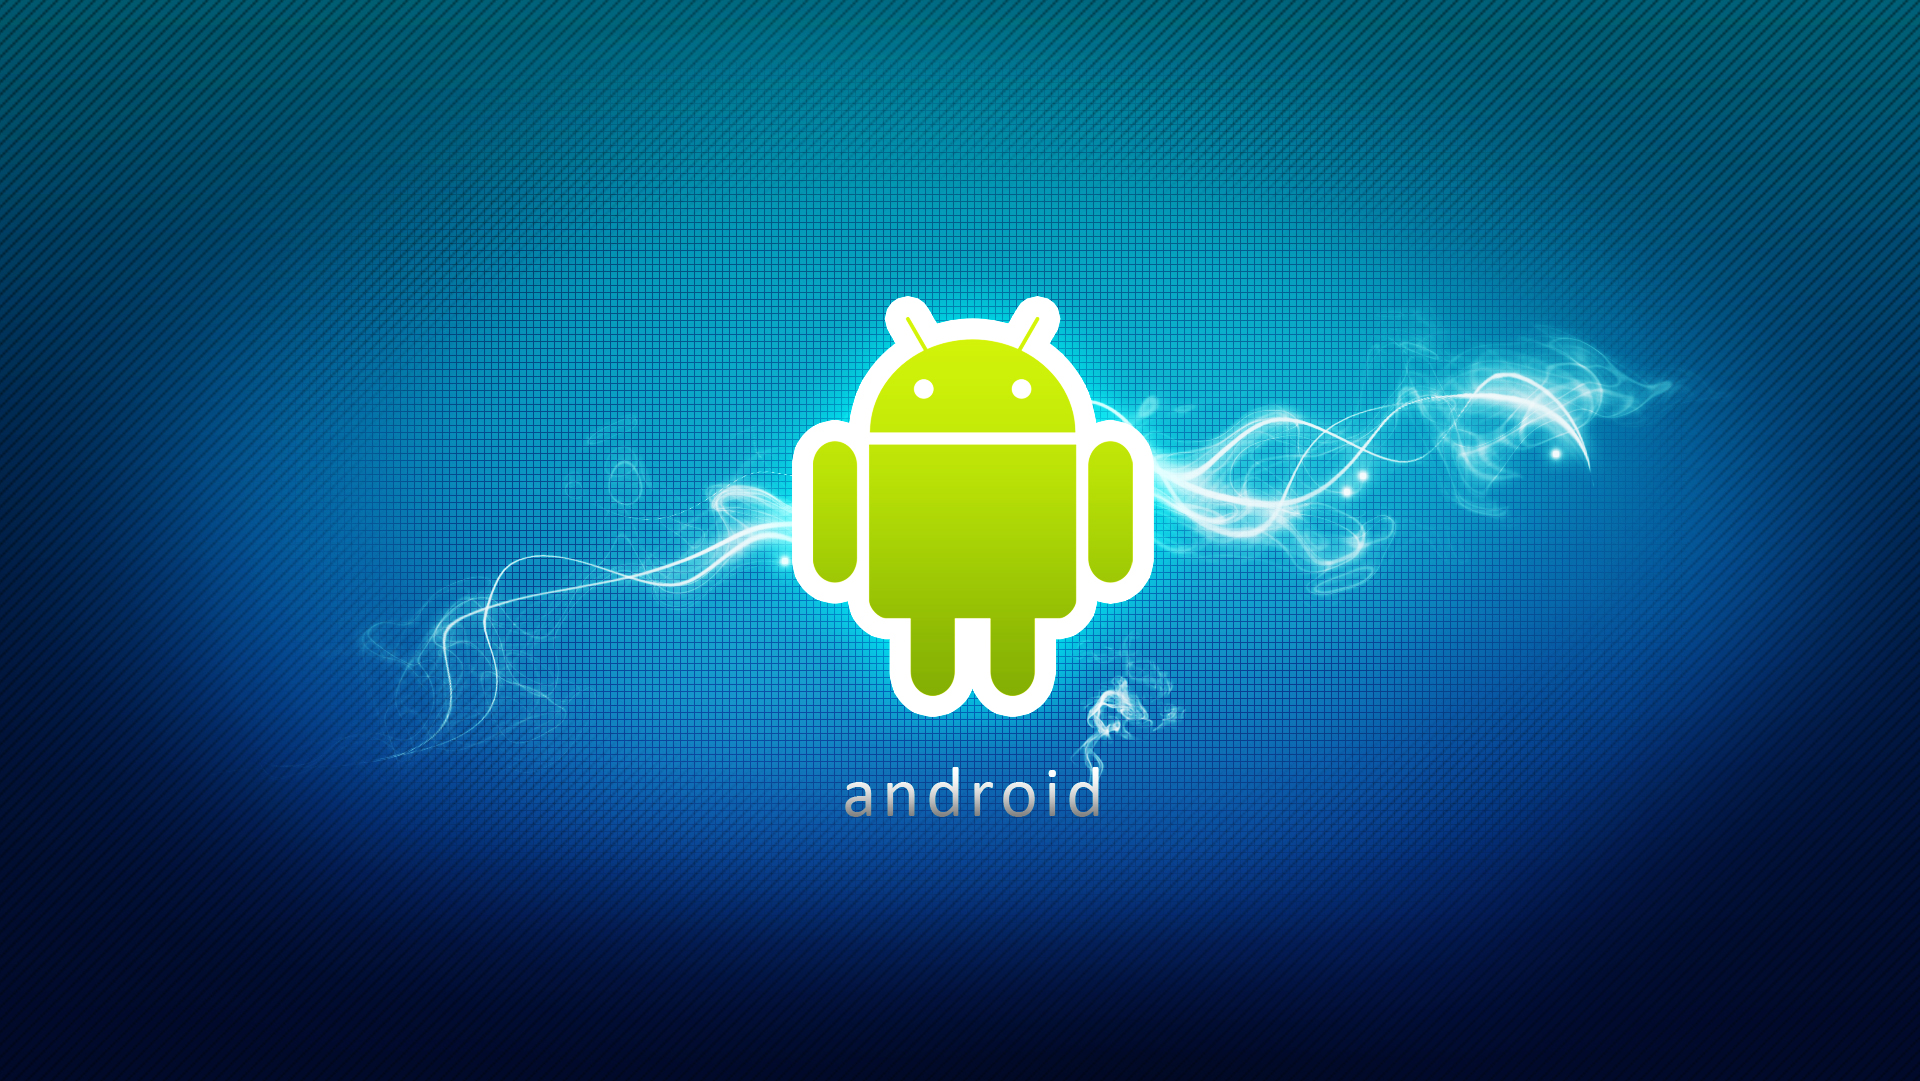 Logotipo de Android con fondo azul y rayo